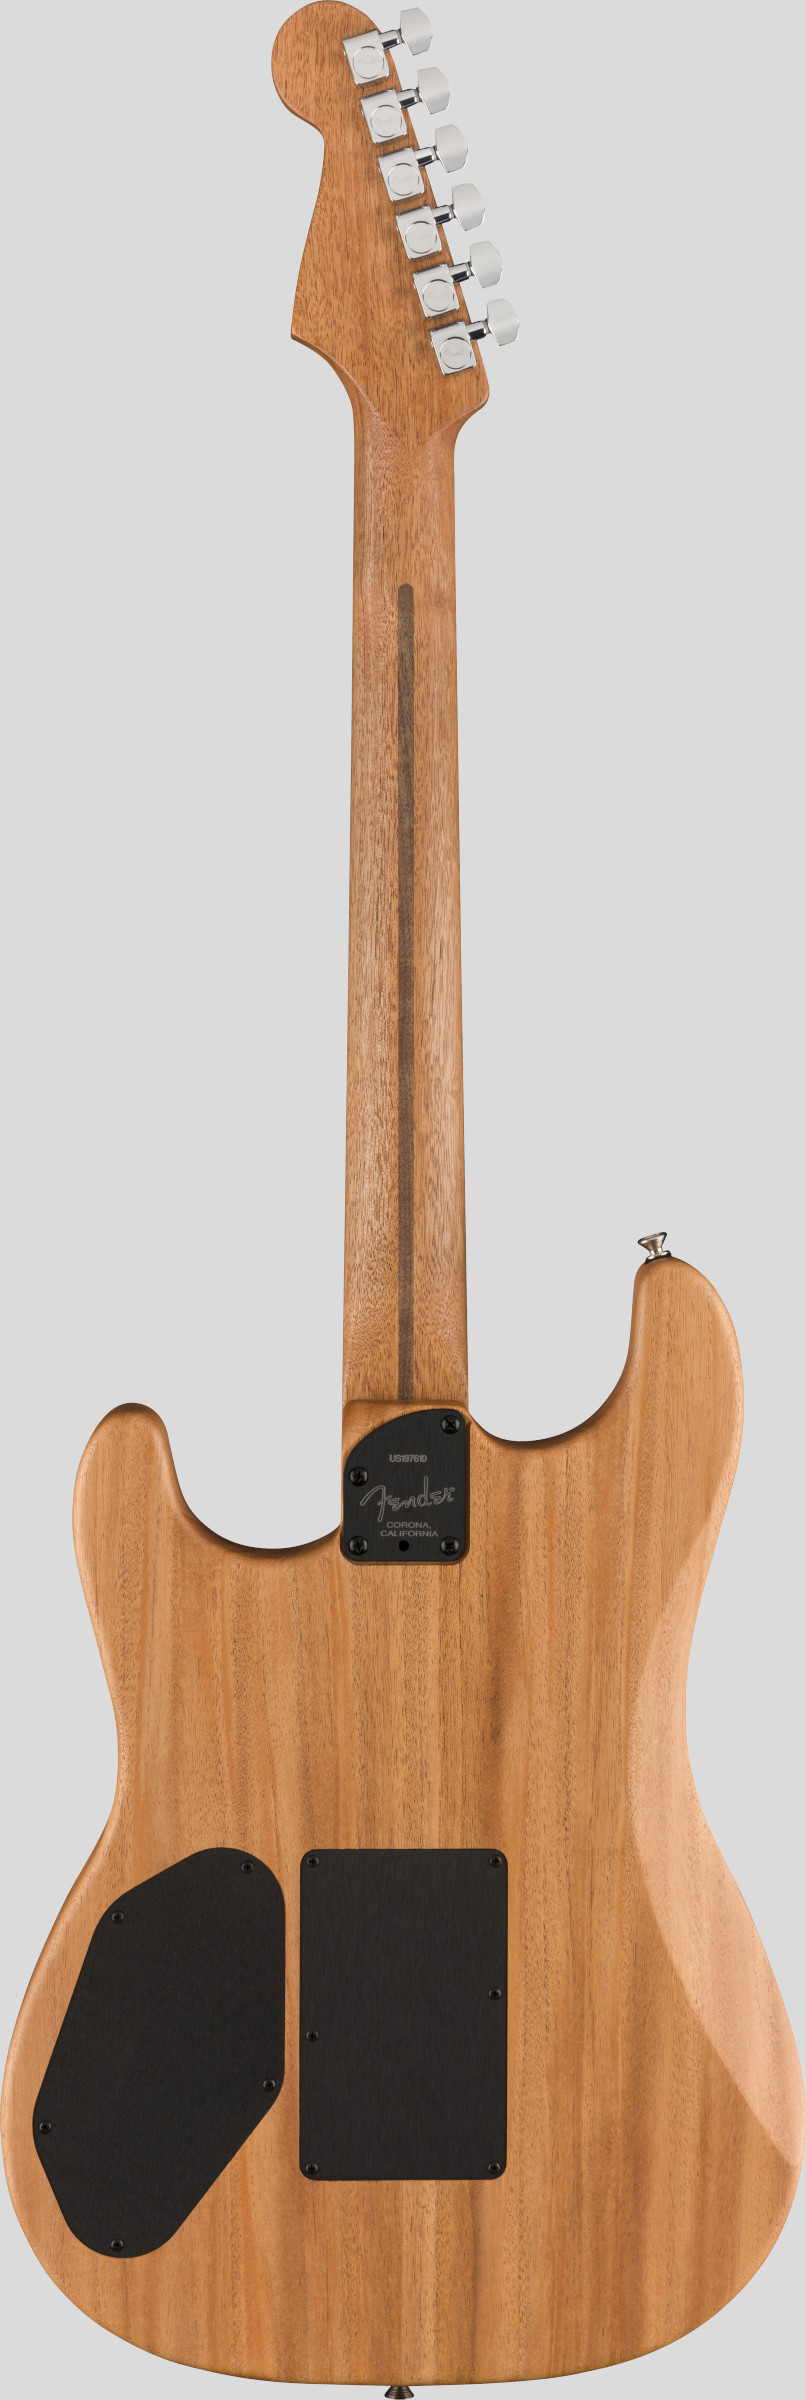 Fender American Acoustasonic Stratocaster Natural 2